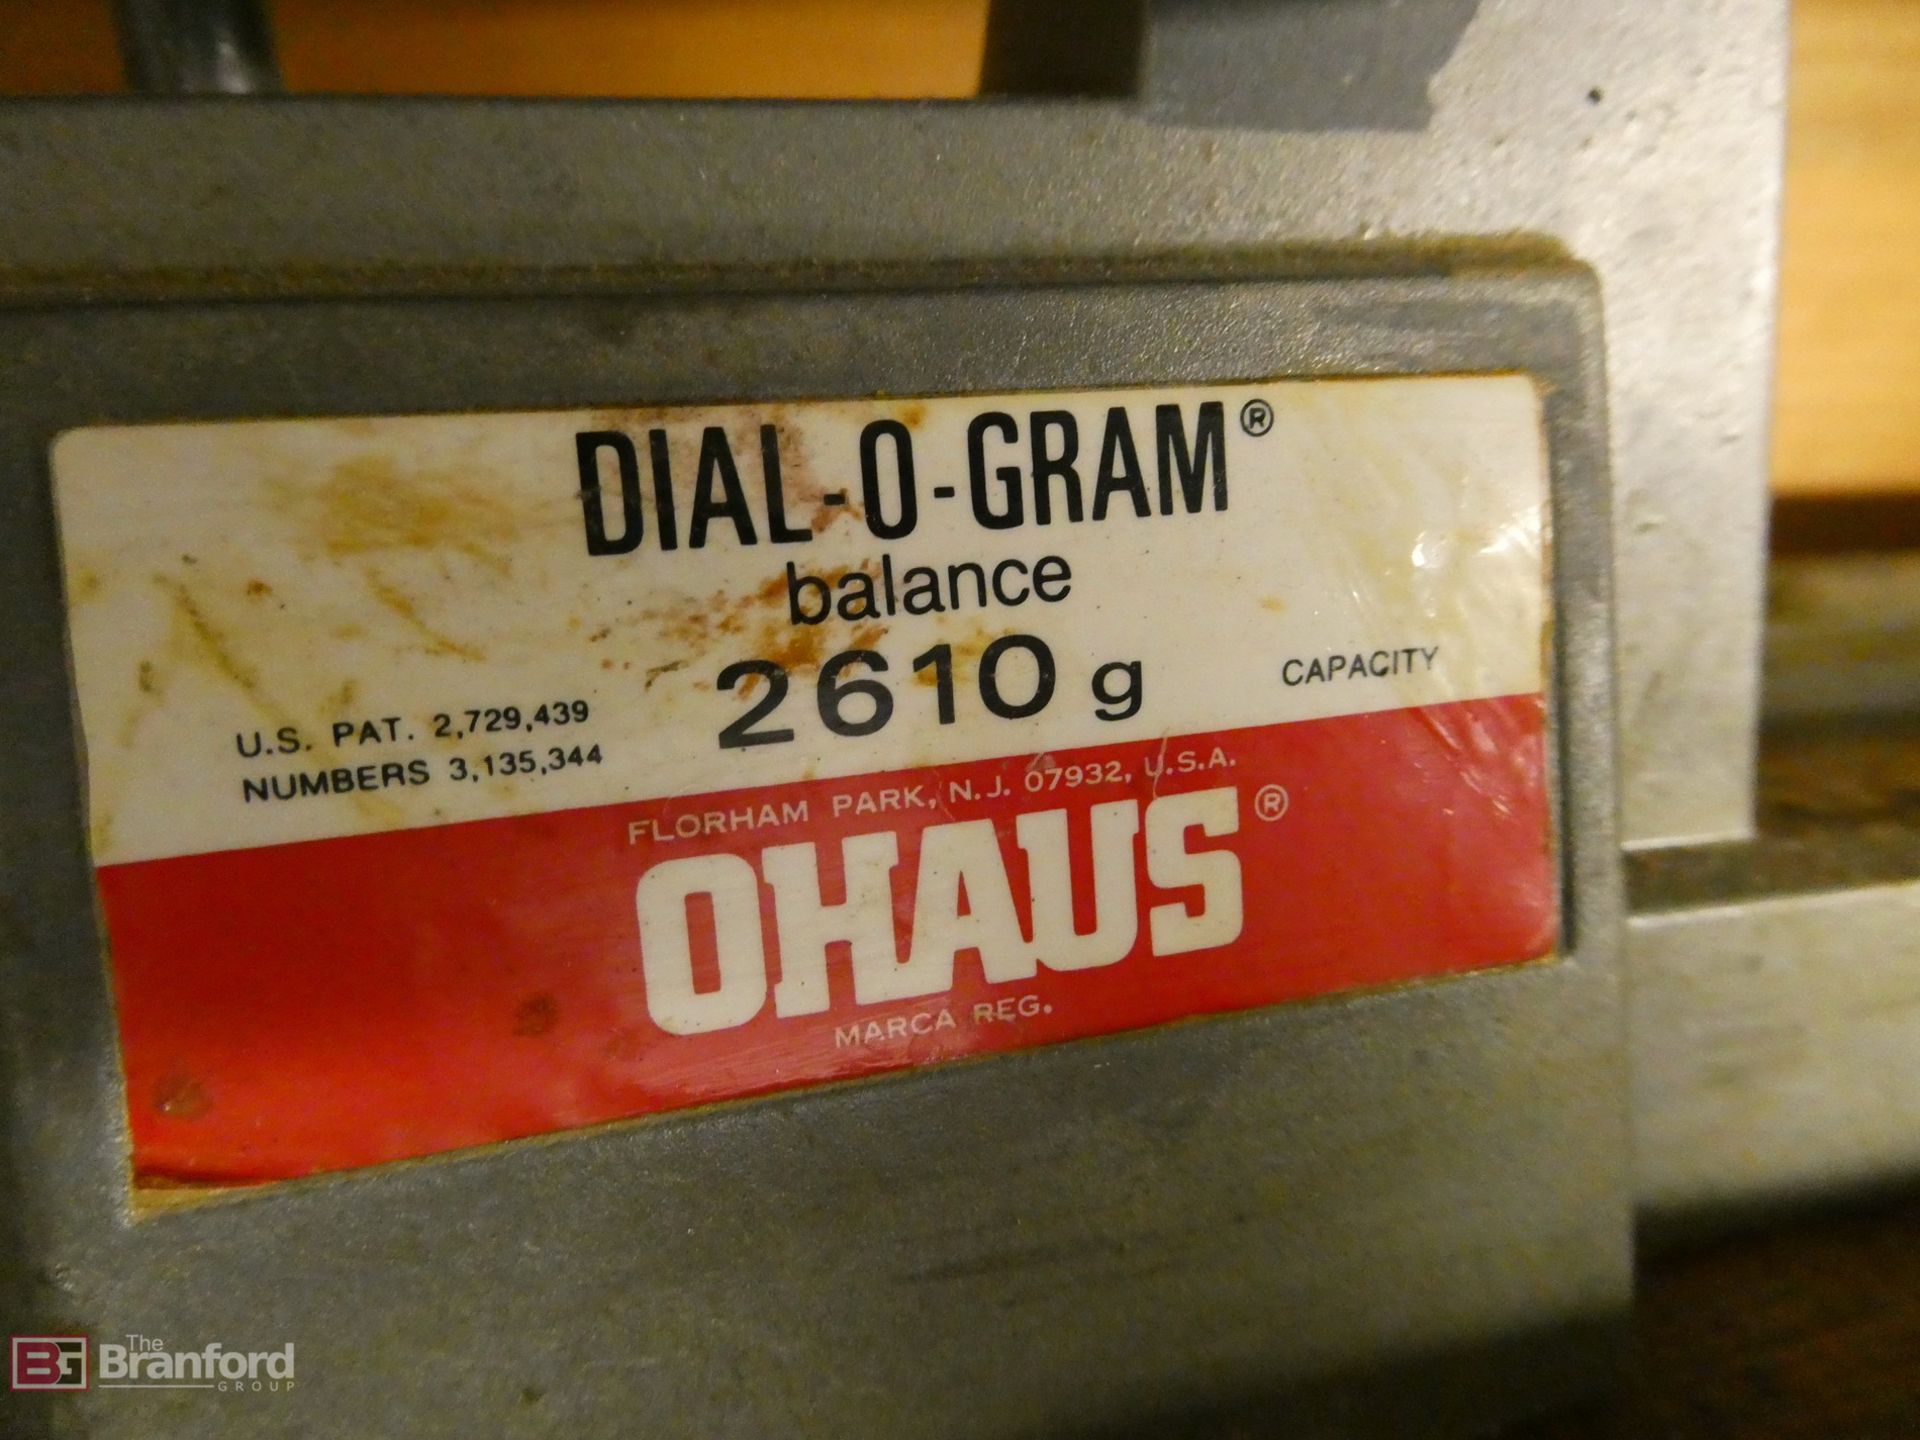 Ohaus Model Dial-O-Gram, Balance 2610g - Image 3 of 3